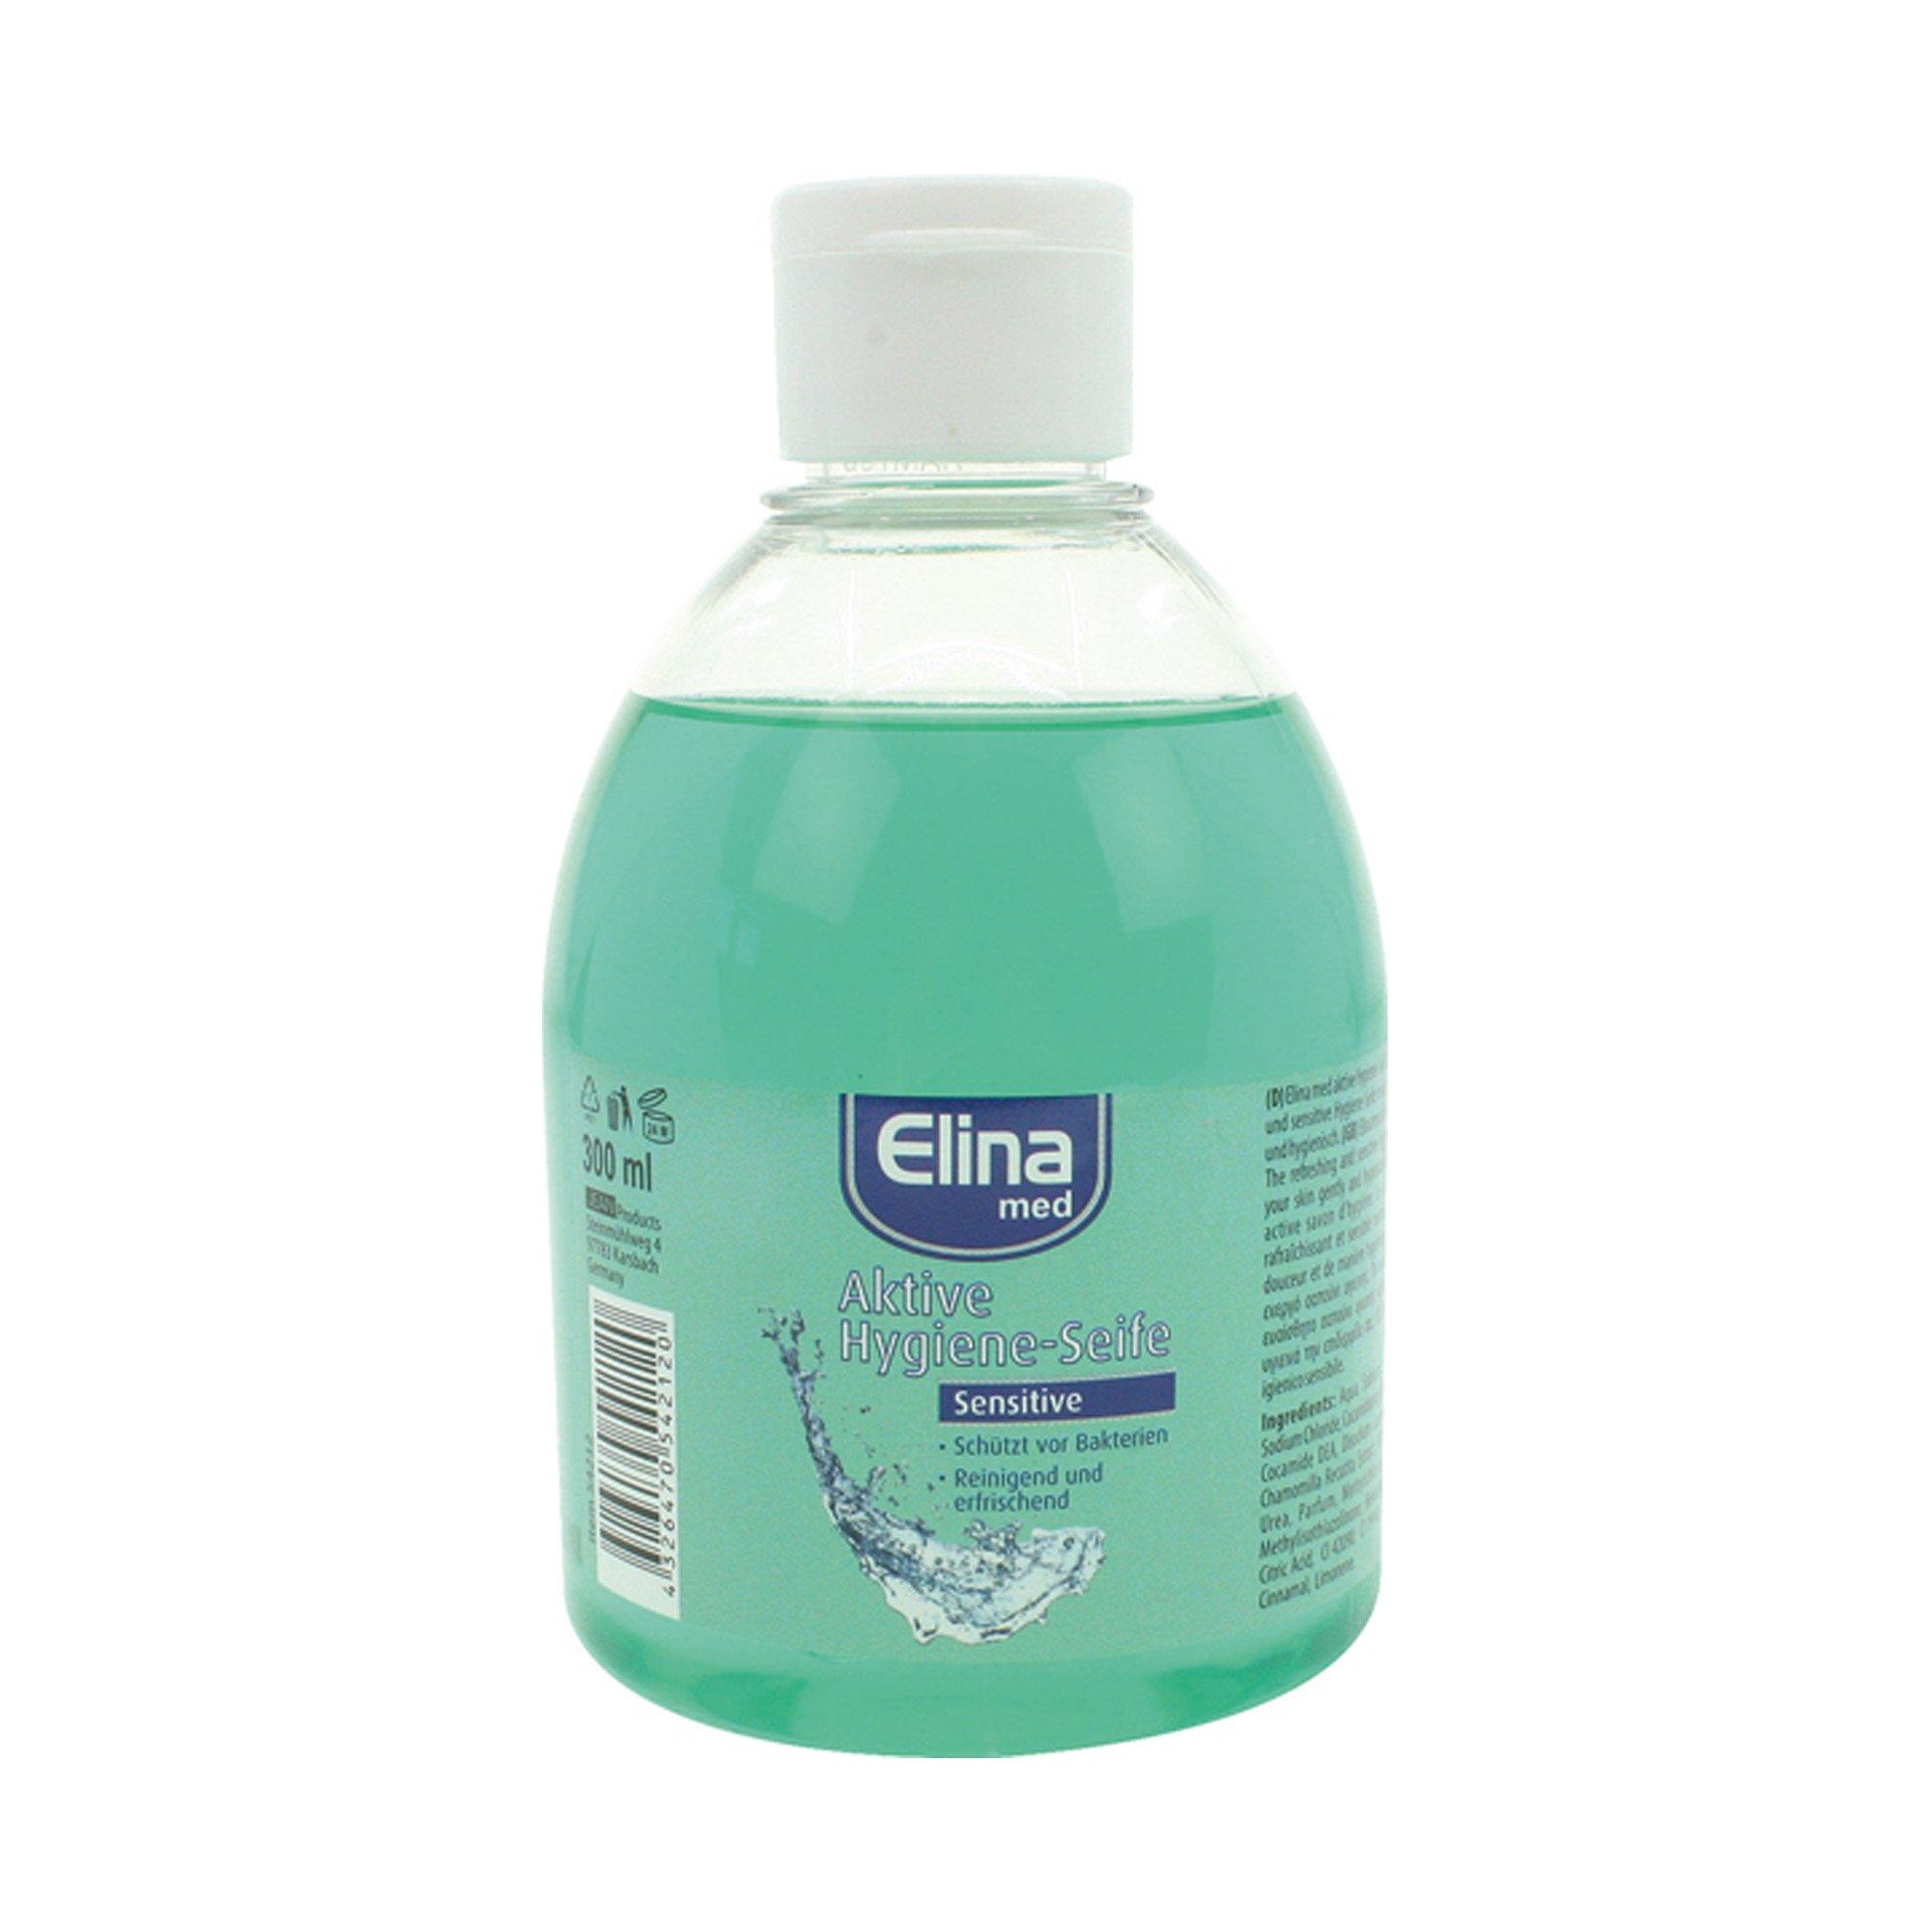 Image of Elina Aktive Hygieneseife - 300ml